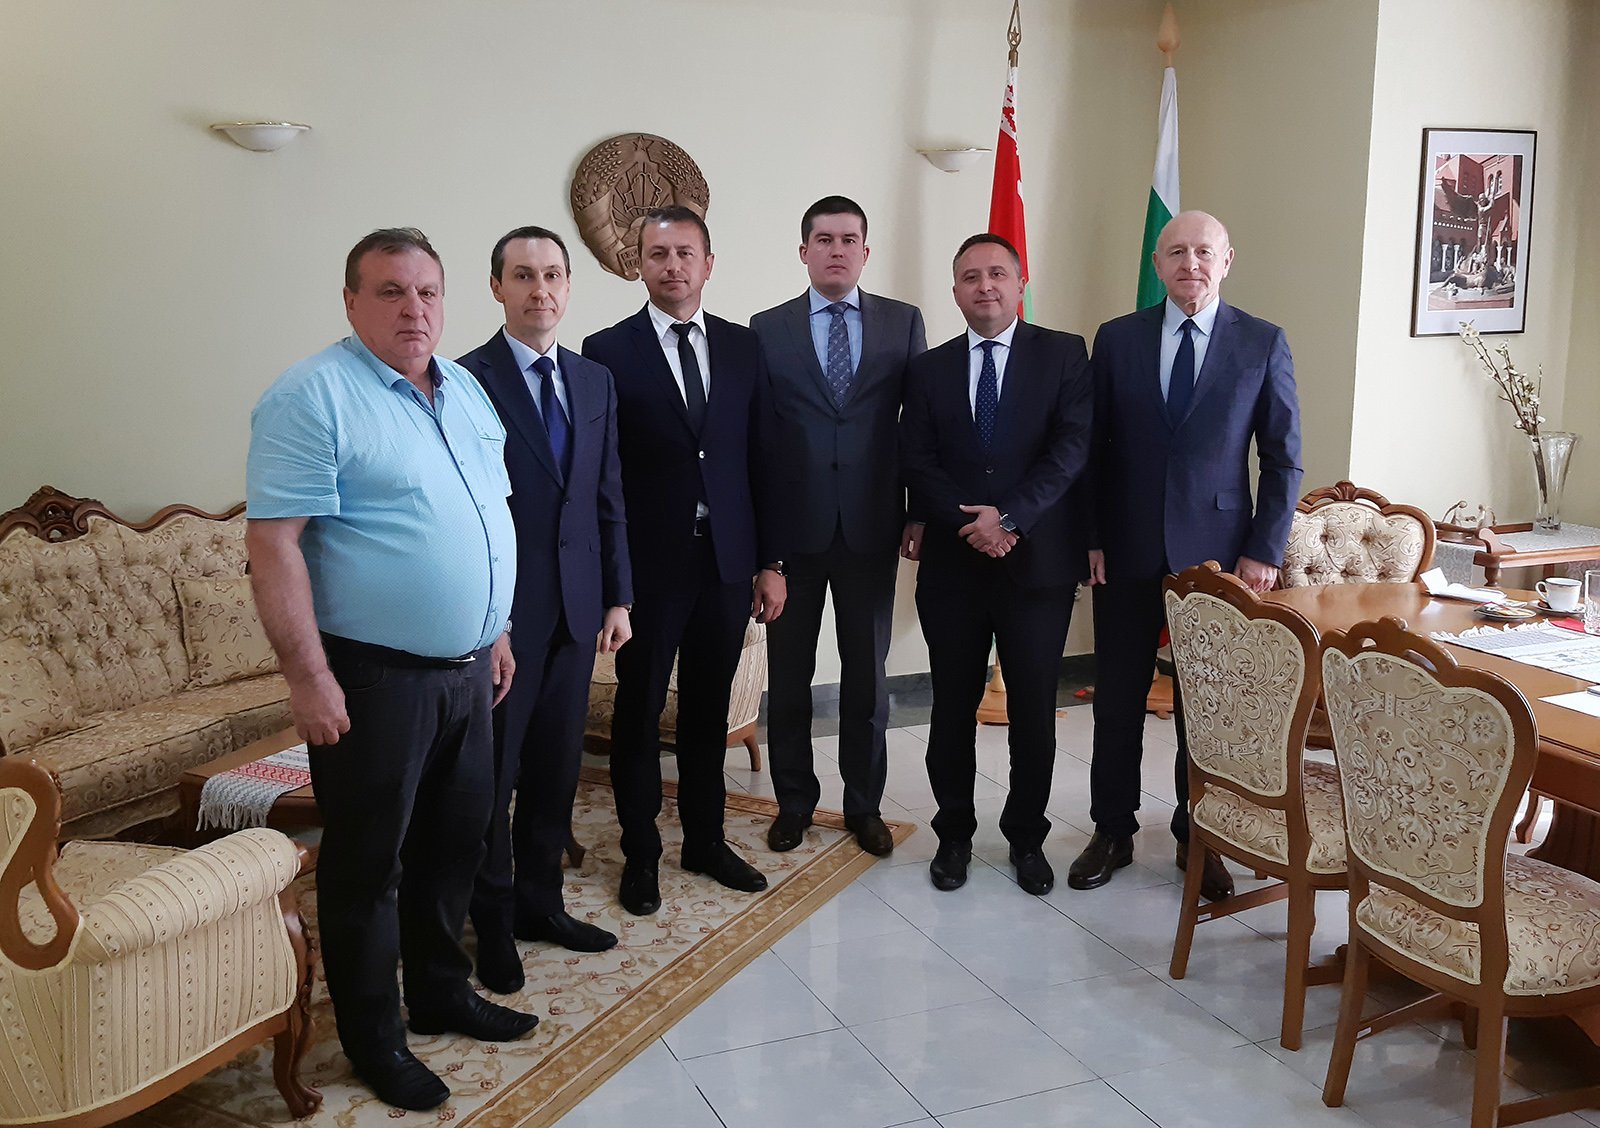 Народните представители от парламентарната група за приятелство България-Беларус“ Даниел Петров